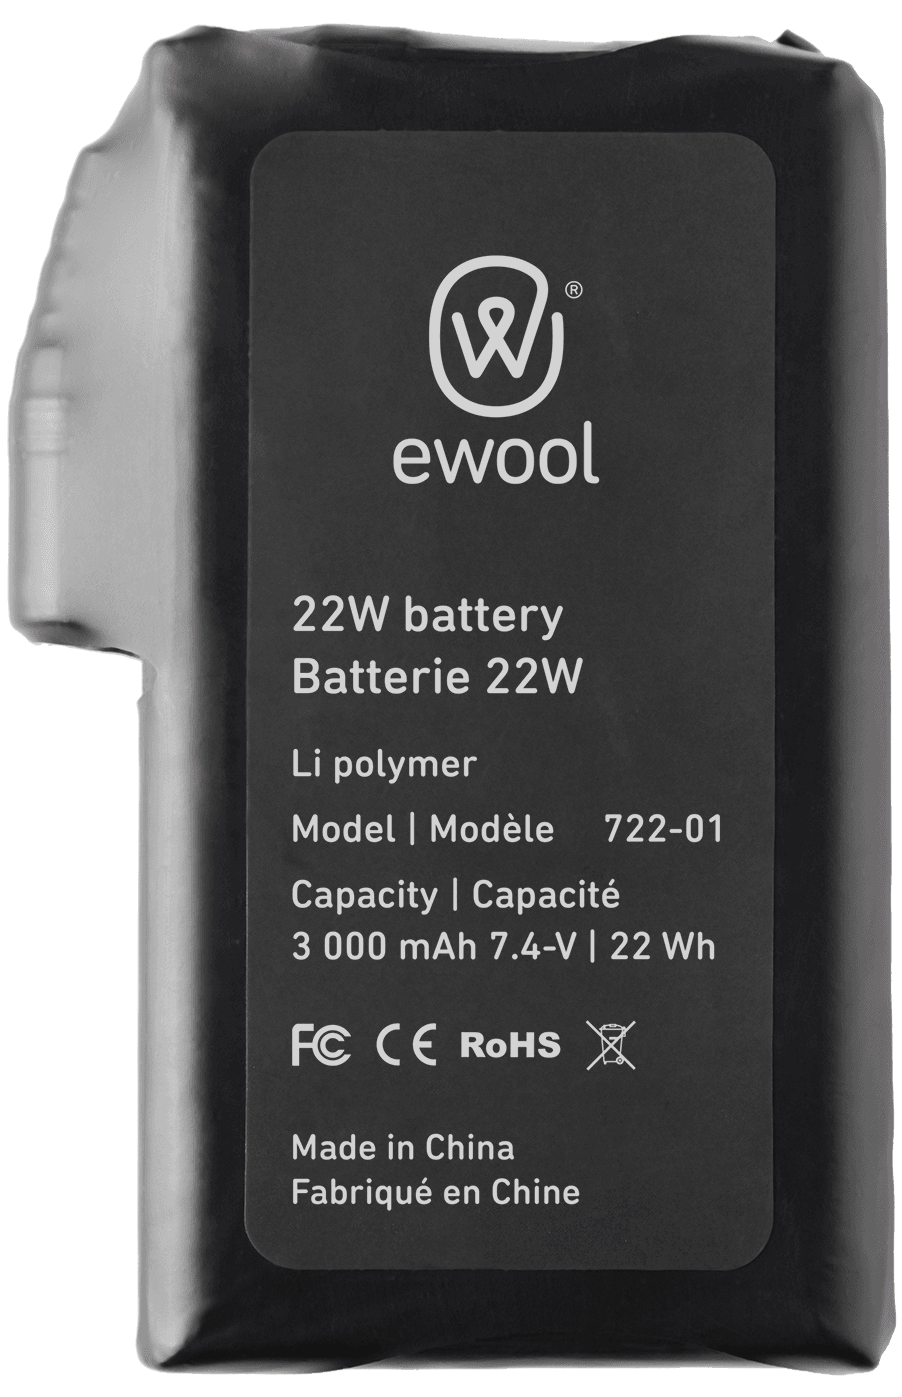 ewool 22W battery